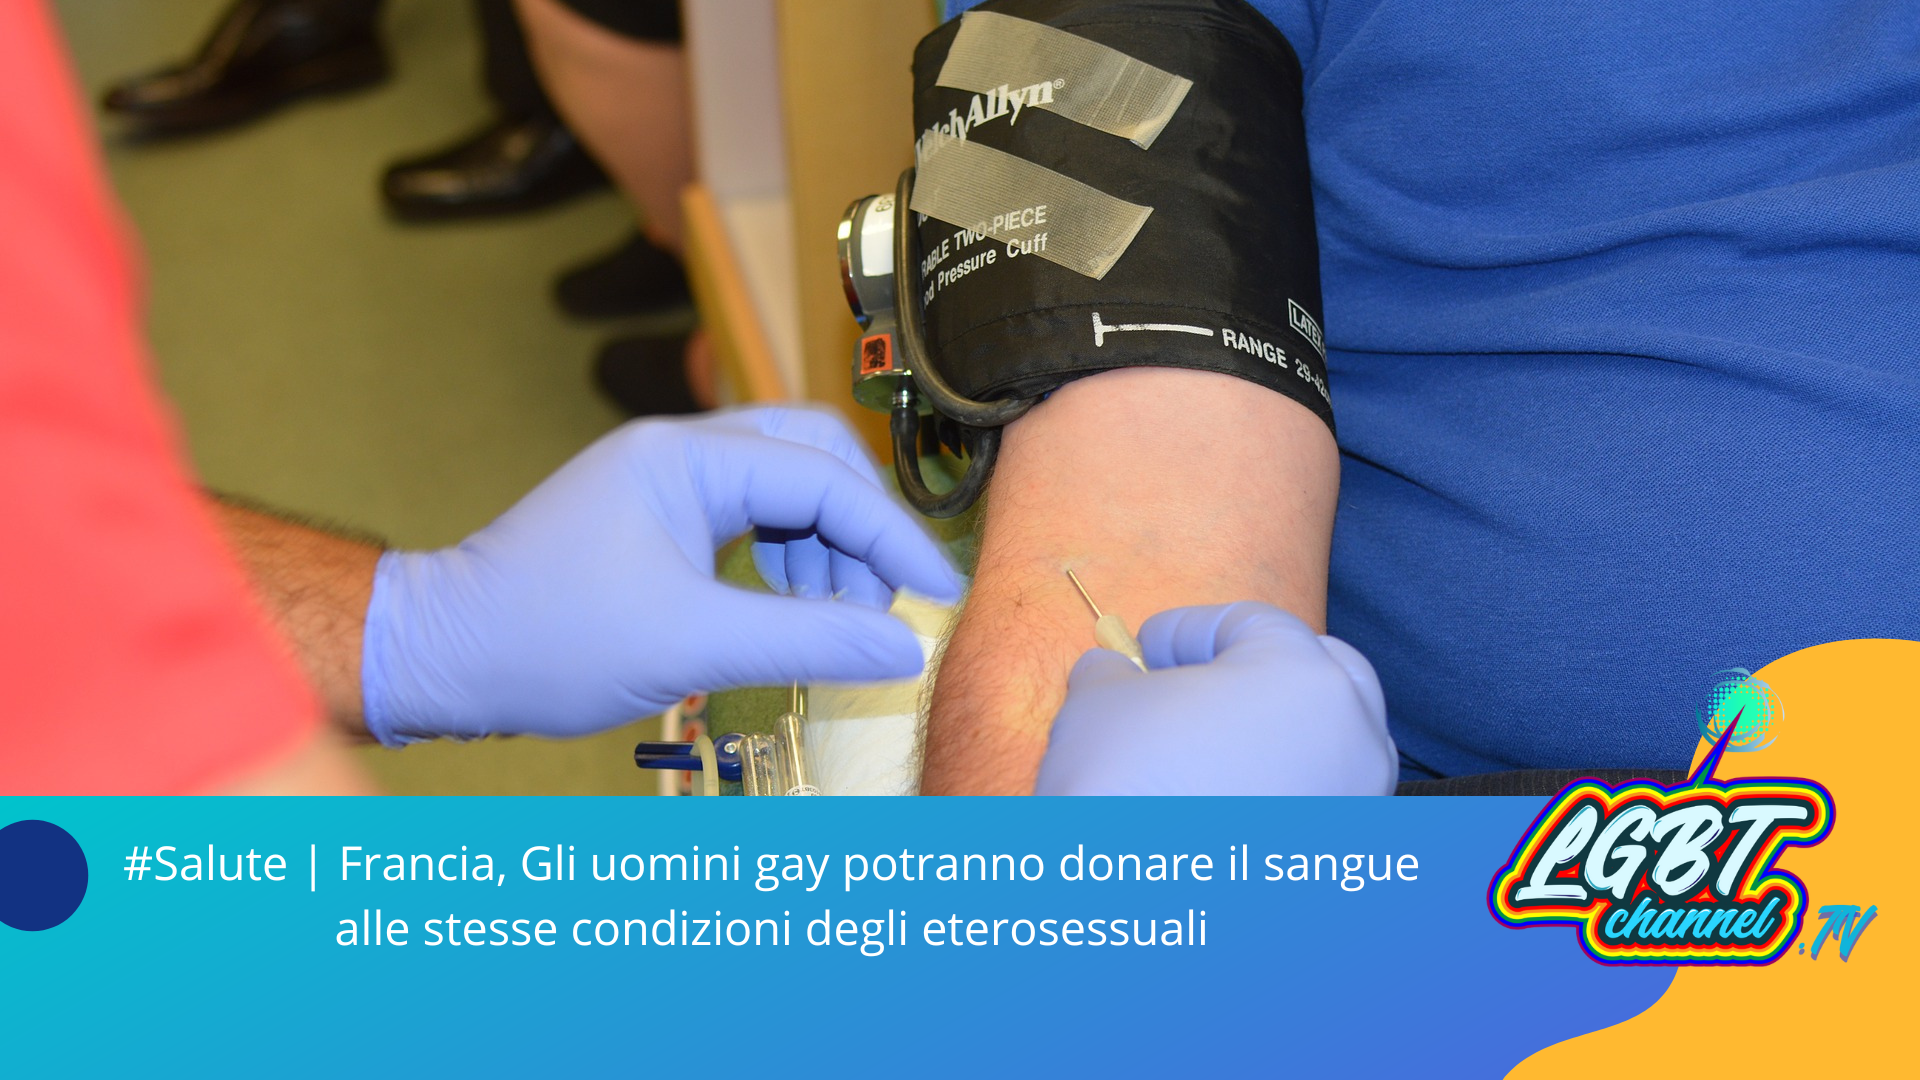 #Salute | Francia, Gli uomini gay potranno donare il sangue alle stesse condizioni degli eterosessuali